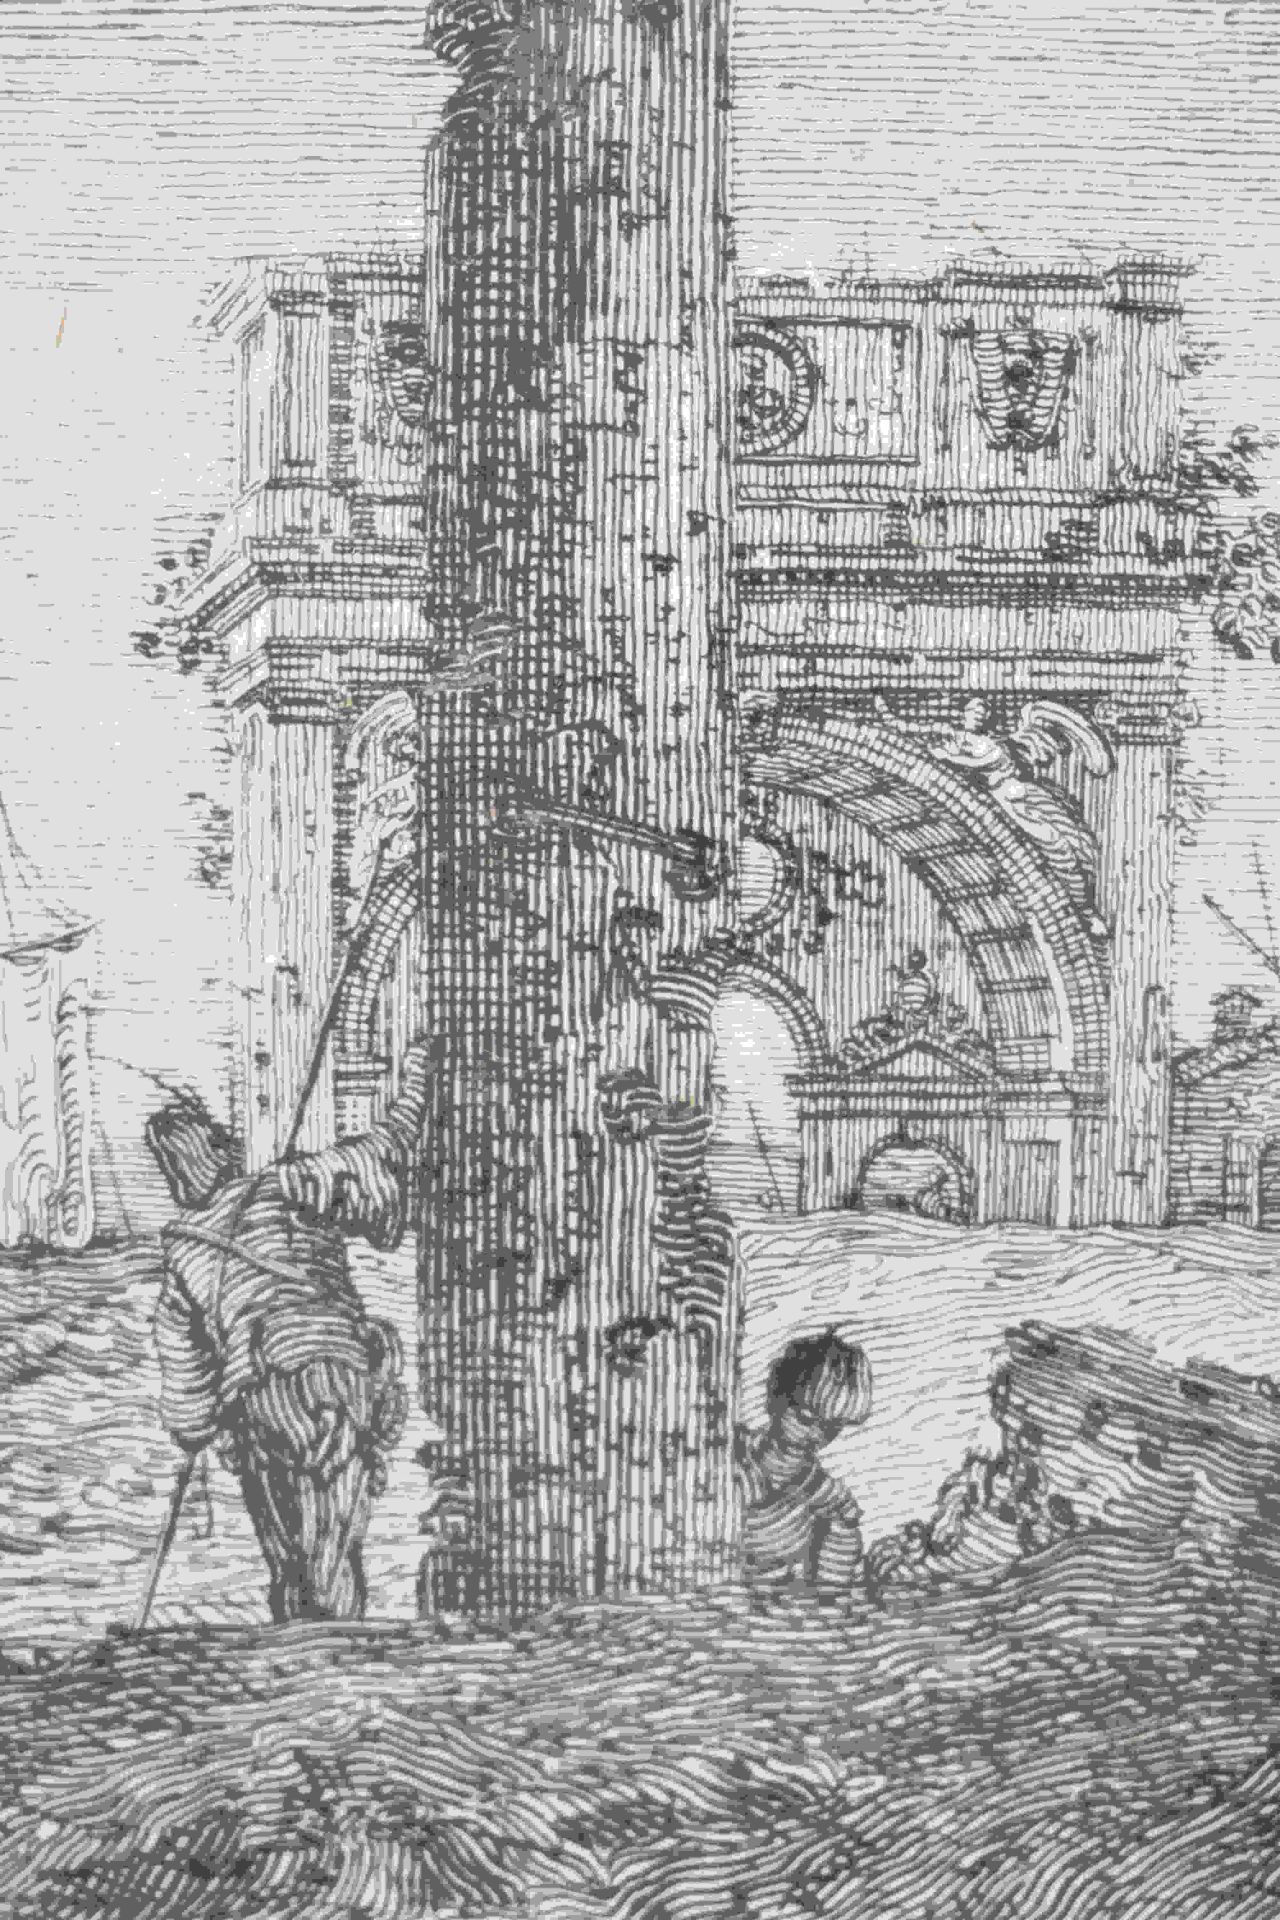 Canal, Giovanni Antonio, gen. Canaletto: Il portico con la lanterna - Image 21 of 24